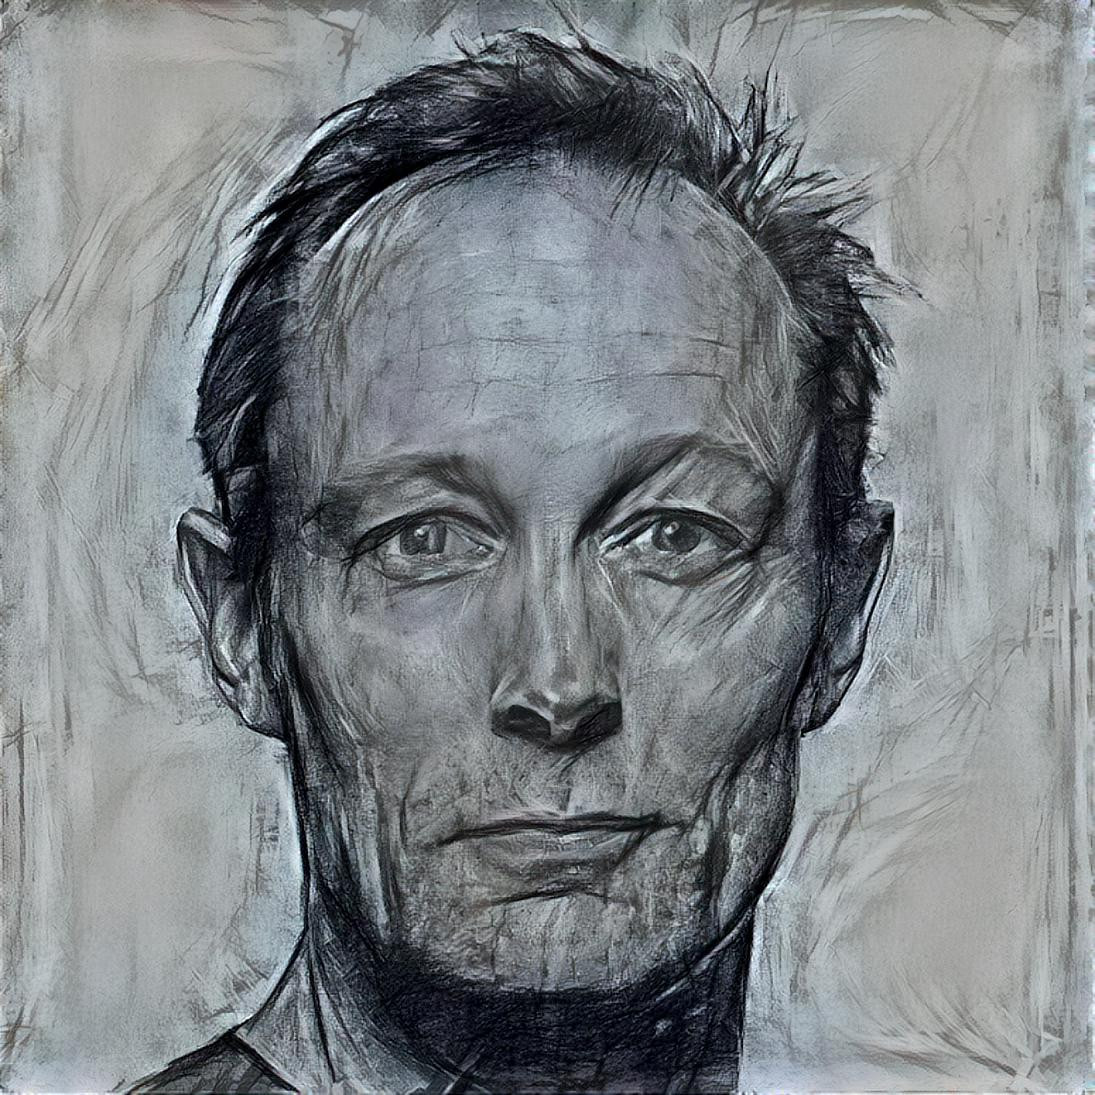 Portrait of Lars Mikkelsen